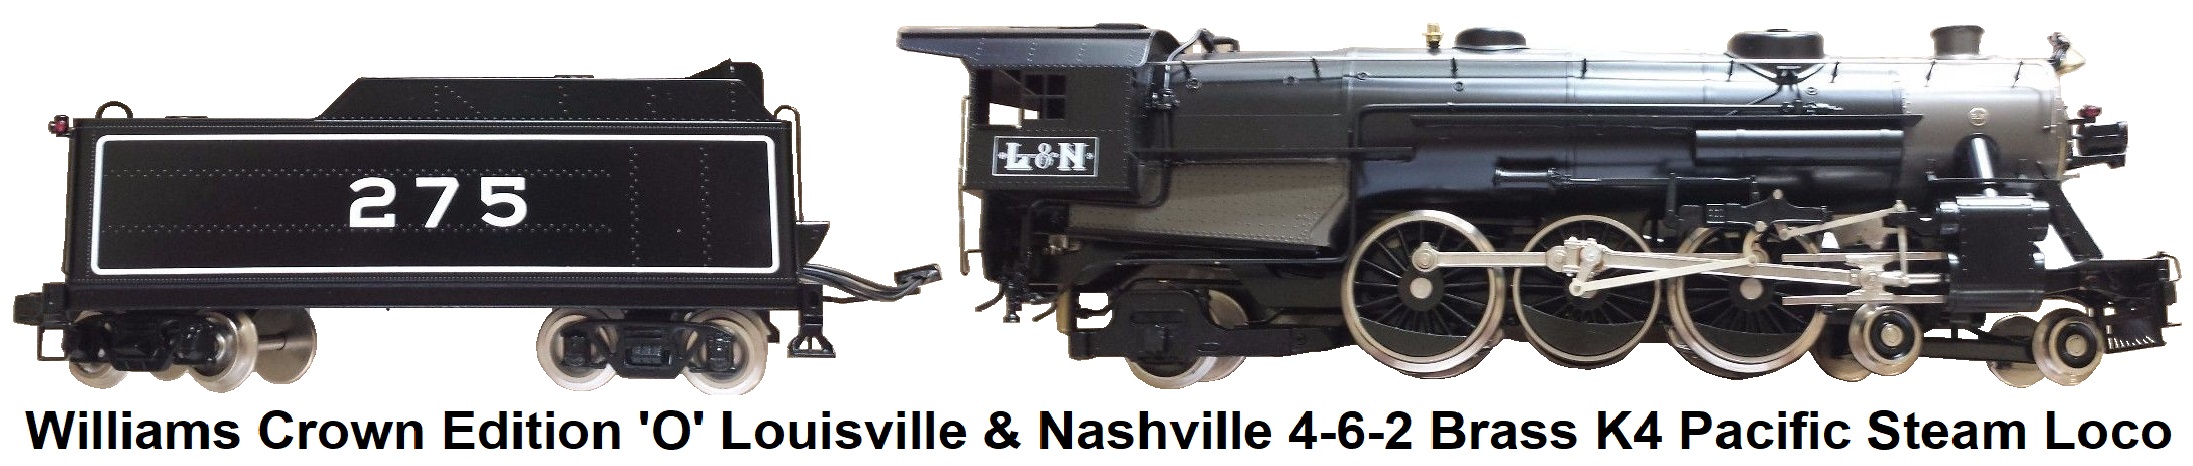 Williams 'O' gauge Crown Edition #5001 Louisville & Nashville 4-6-2 Brass K4 Pacific Steam Locomotive & Tender